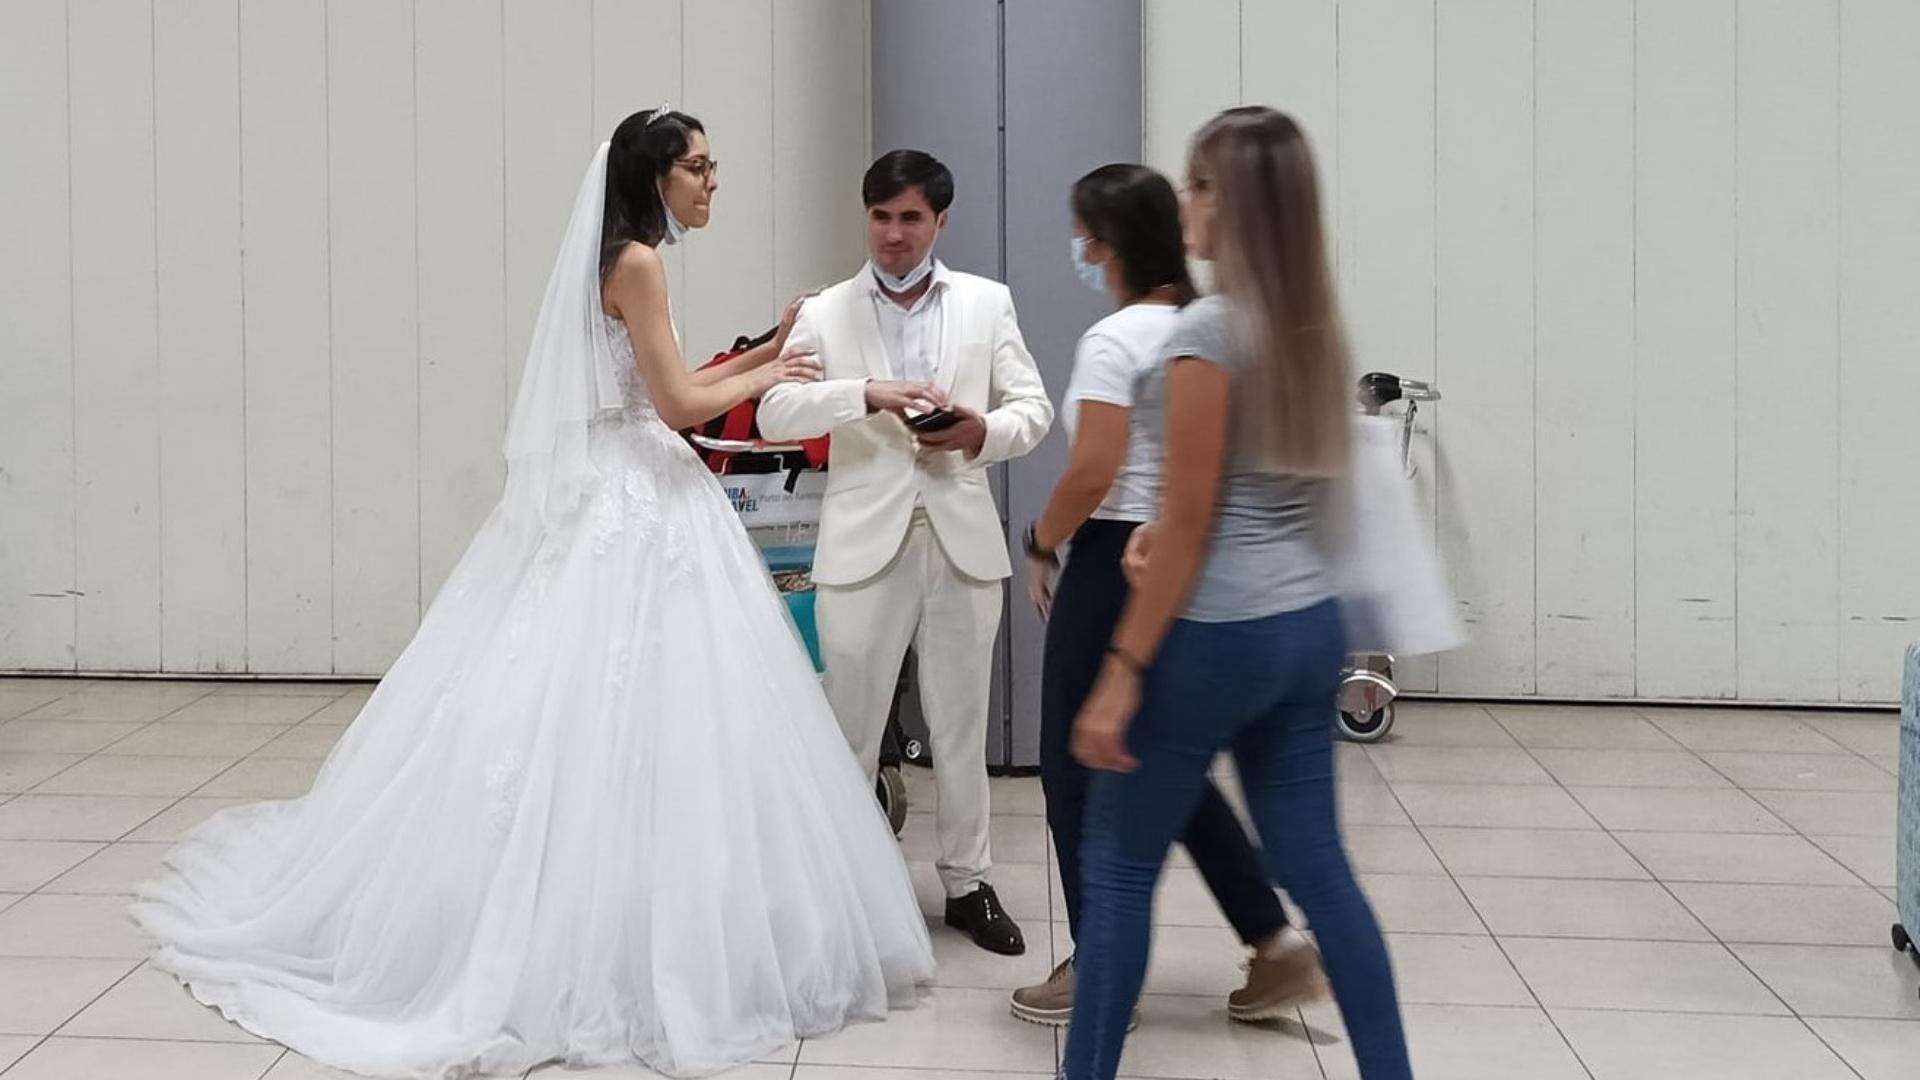 Viral: llegan vestidos de novios a aeropuerto cubano | ADN Cuba